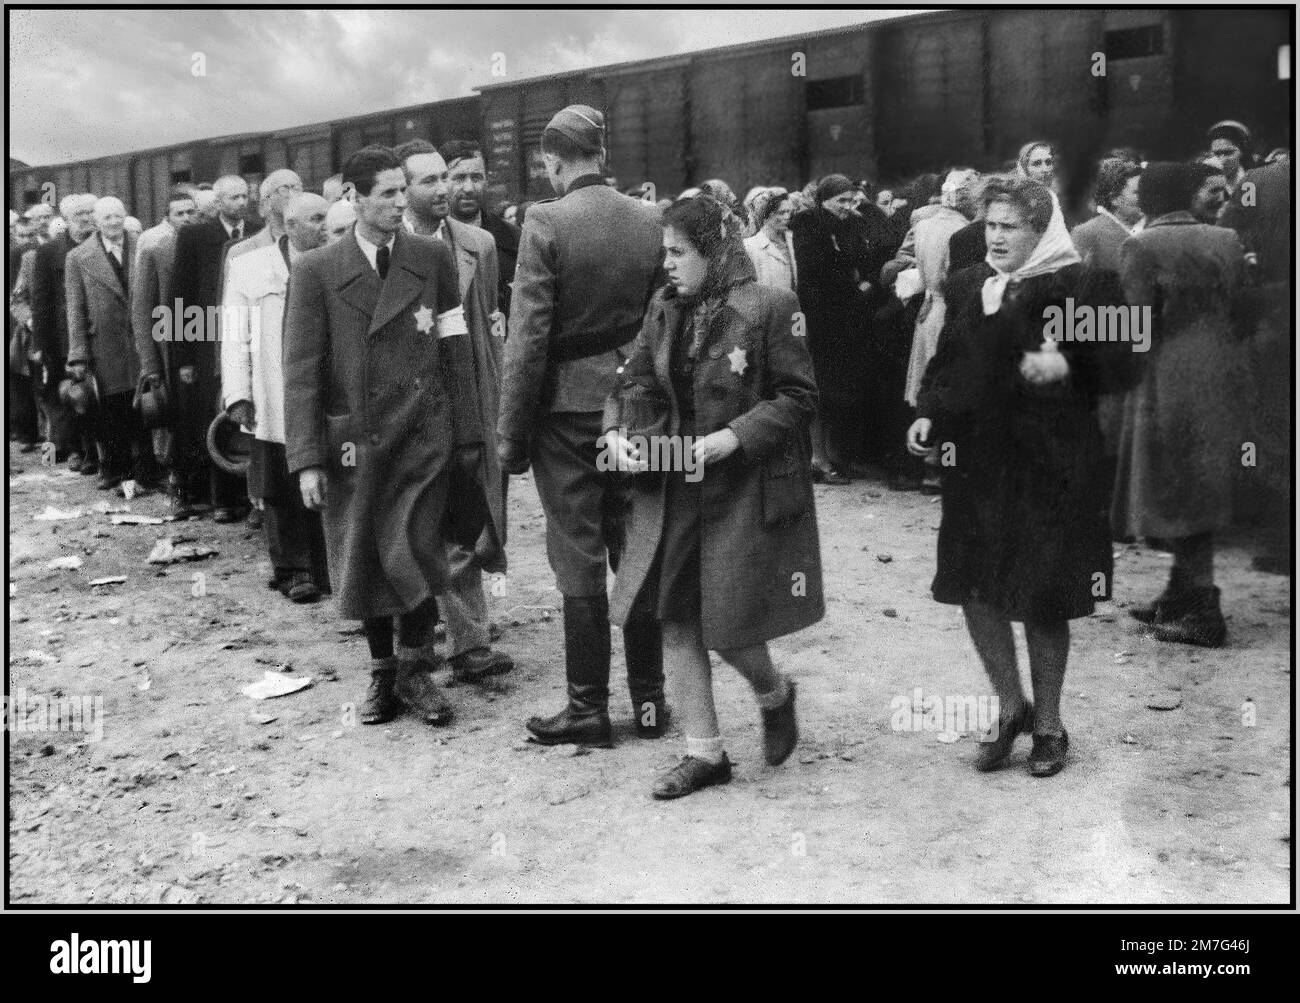 AUSCHWITZ-BIRKENAU ARRIVO DEI PRIGIONIERI DELL'OLOCAUSTO CHE INDOSSANO LE STELLE GIALLE DI DAVIDE - Una visione dell'inferno sulla terra. 1944, i nazisti 'classificazione' (vita o morte) ignari prigionieri sul convitto ferroviario all'esterno dell'ingresso del campo di sterminio di Auschwitz-Birkenau. Il famigerato campo di Auschwitz fu iniziato per ordine di Adolf Hitler nel 1940 durante l'occupazione della Polonia da parte della Germania nazista durante la guerra mondiale 2, ulteriormente abilitato da Heinrich Luitpold Himmler il Reichsführer dello Schutzstaffel, e membro principale del Partito nazista di Germania Foto Stock